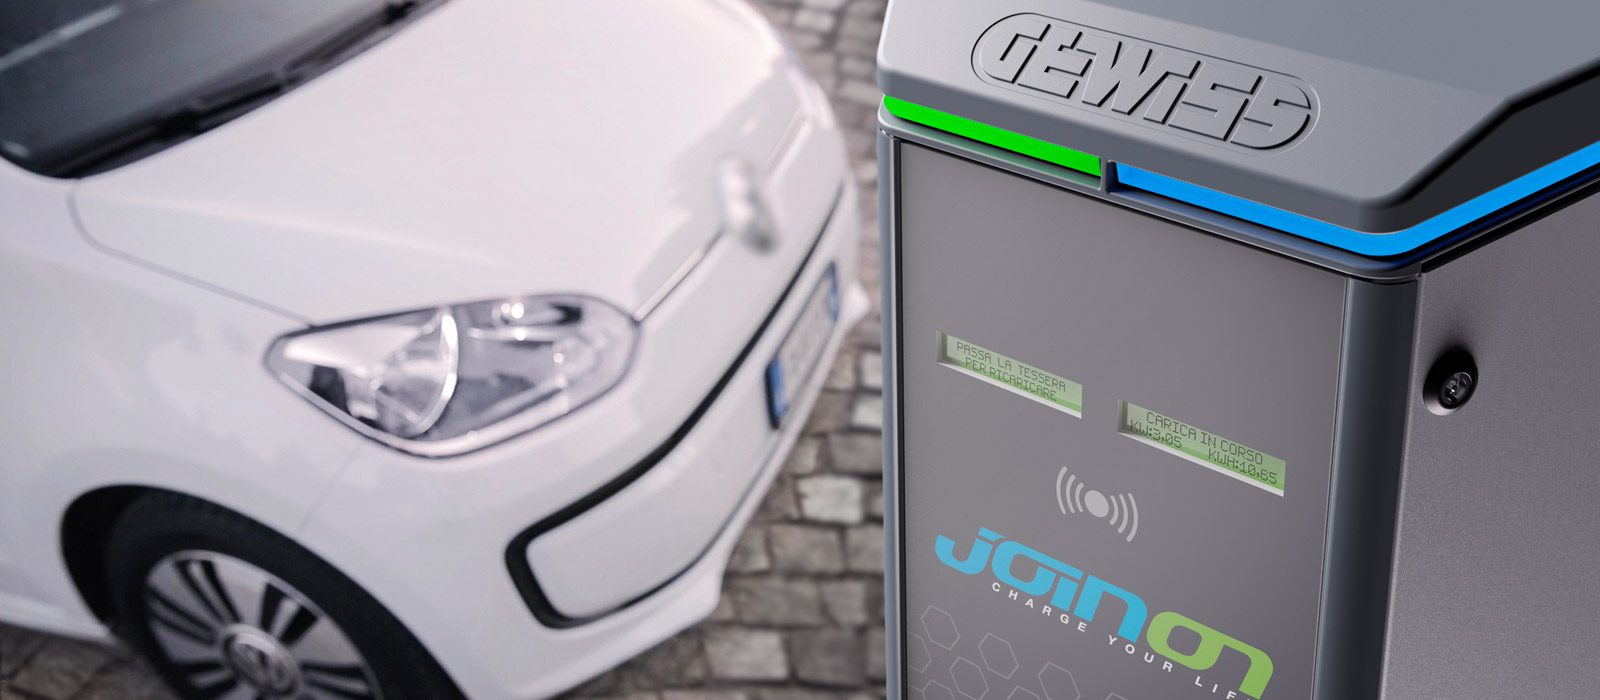 Ontdek de nieuwe oplaadoplossing voor elektrische voertuigen van JOINON